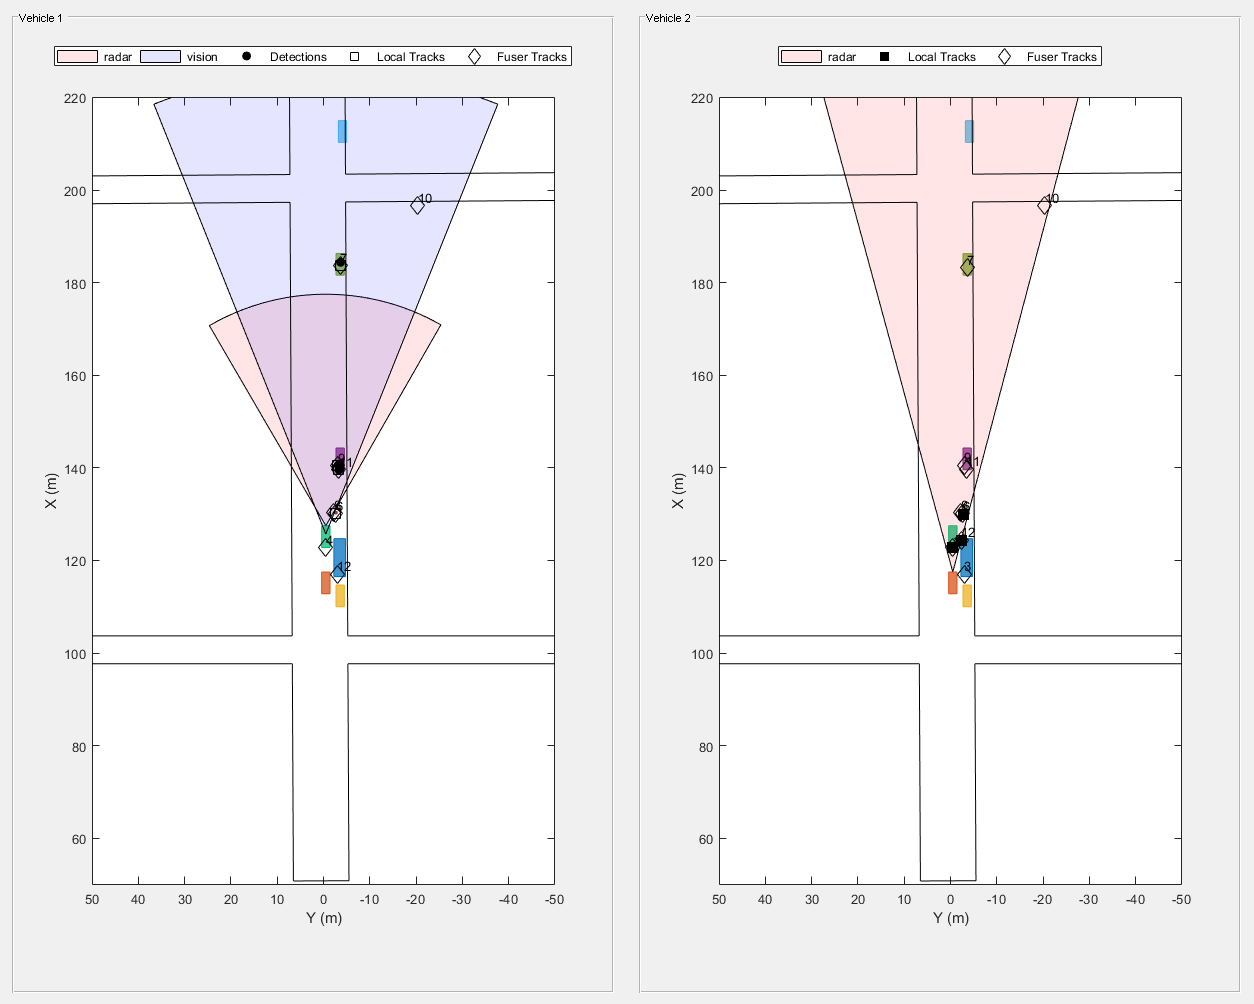 图Snap #3包含2个轴对象和其他类型的uipanel对象。axis对象1包含13个类型为patch, line, text的对象。这些目标代表雷达，视觉，探测，局部轨迹，Fuser轨迹。axis对象2包含12个类型为patch, line, text的对象。这些物体代表雷达，局部轨迹，Fuser轨迹。